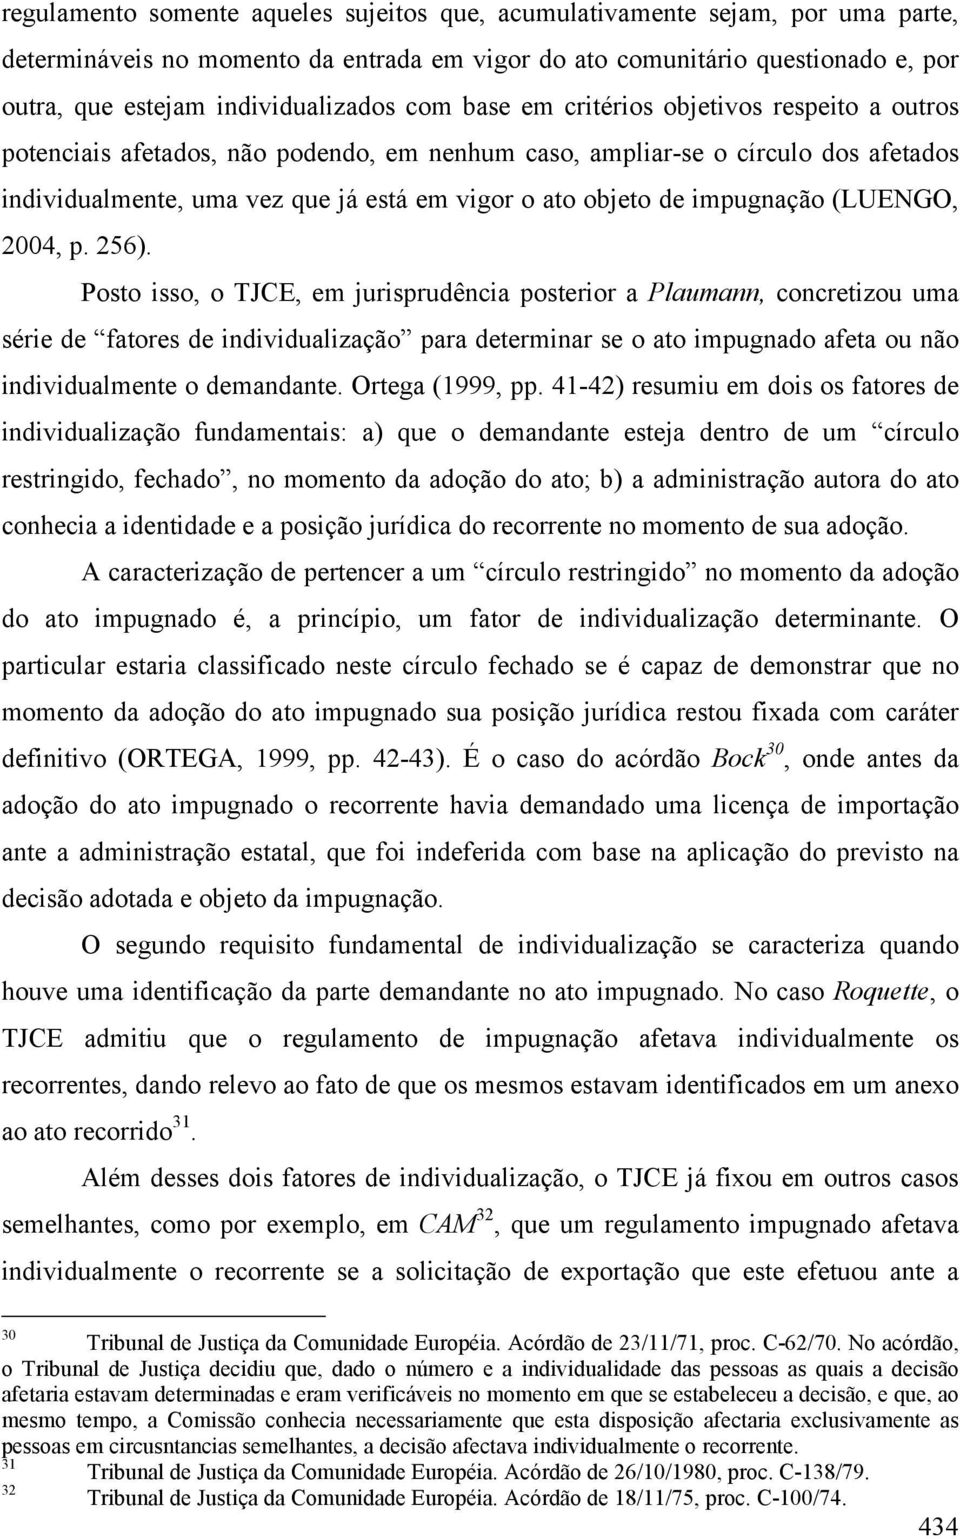 impugnação (LUENGO, 2004, p. 256).